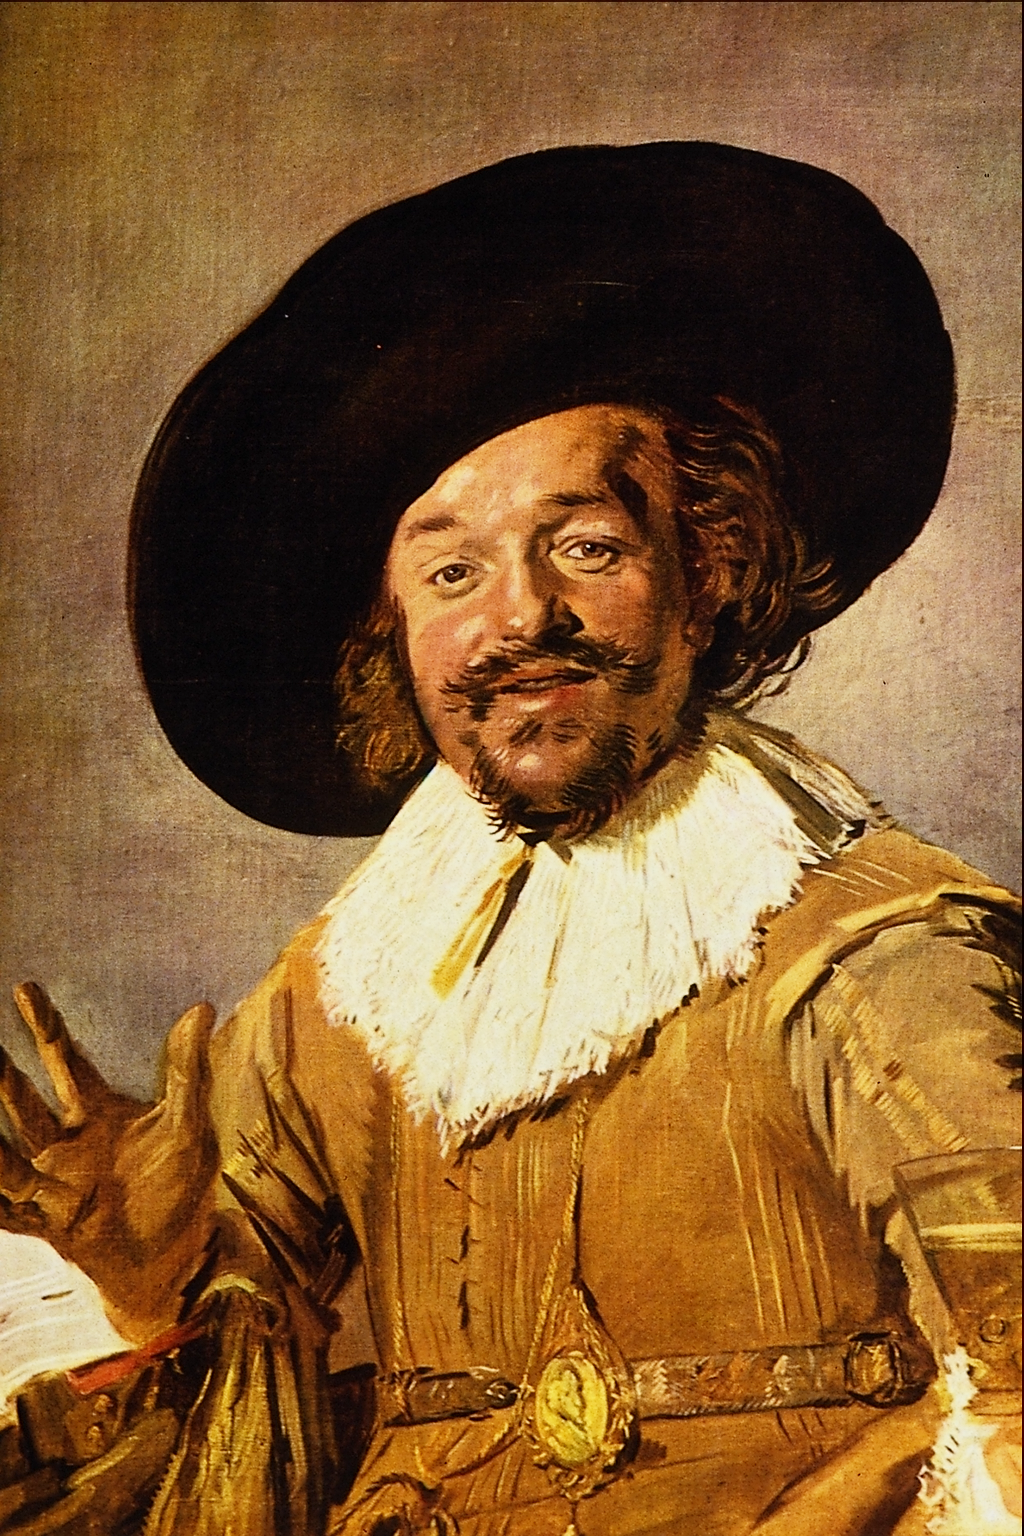 Frans Hals, The Jolly Toper, c. 1628-1630